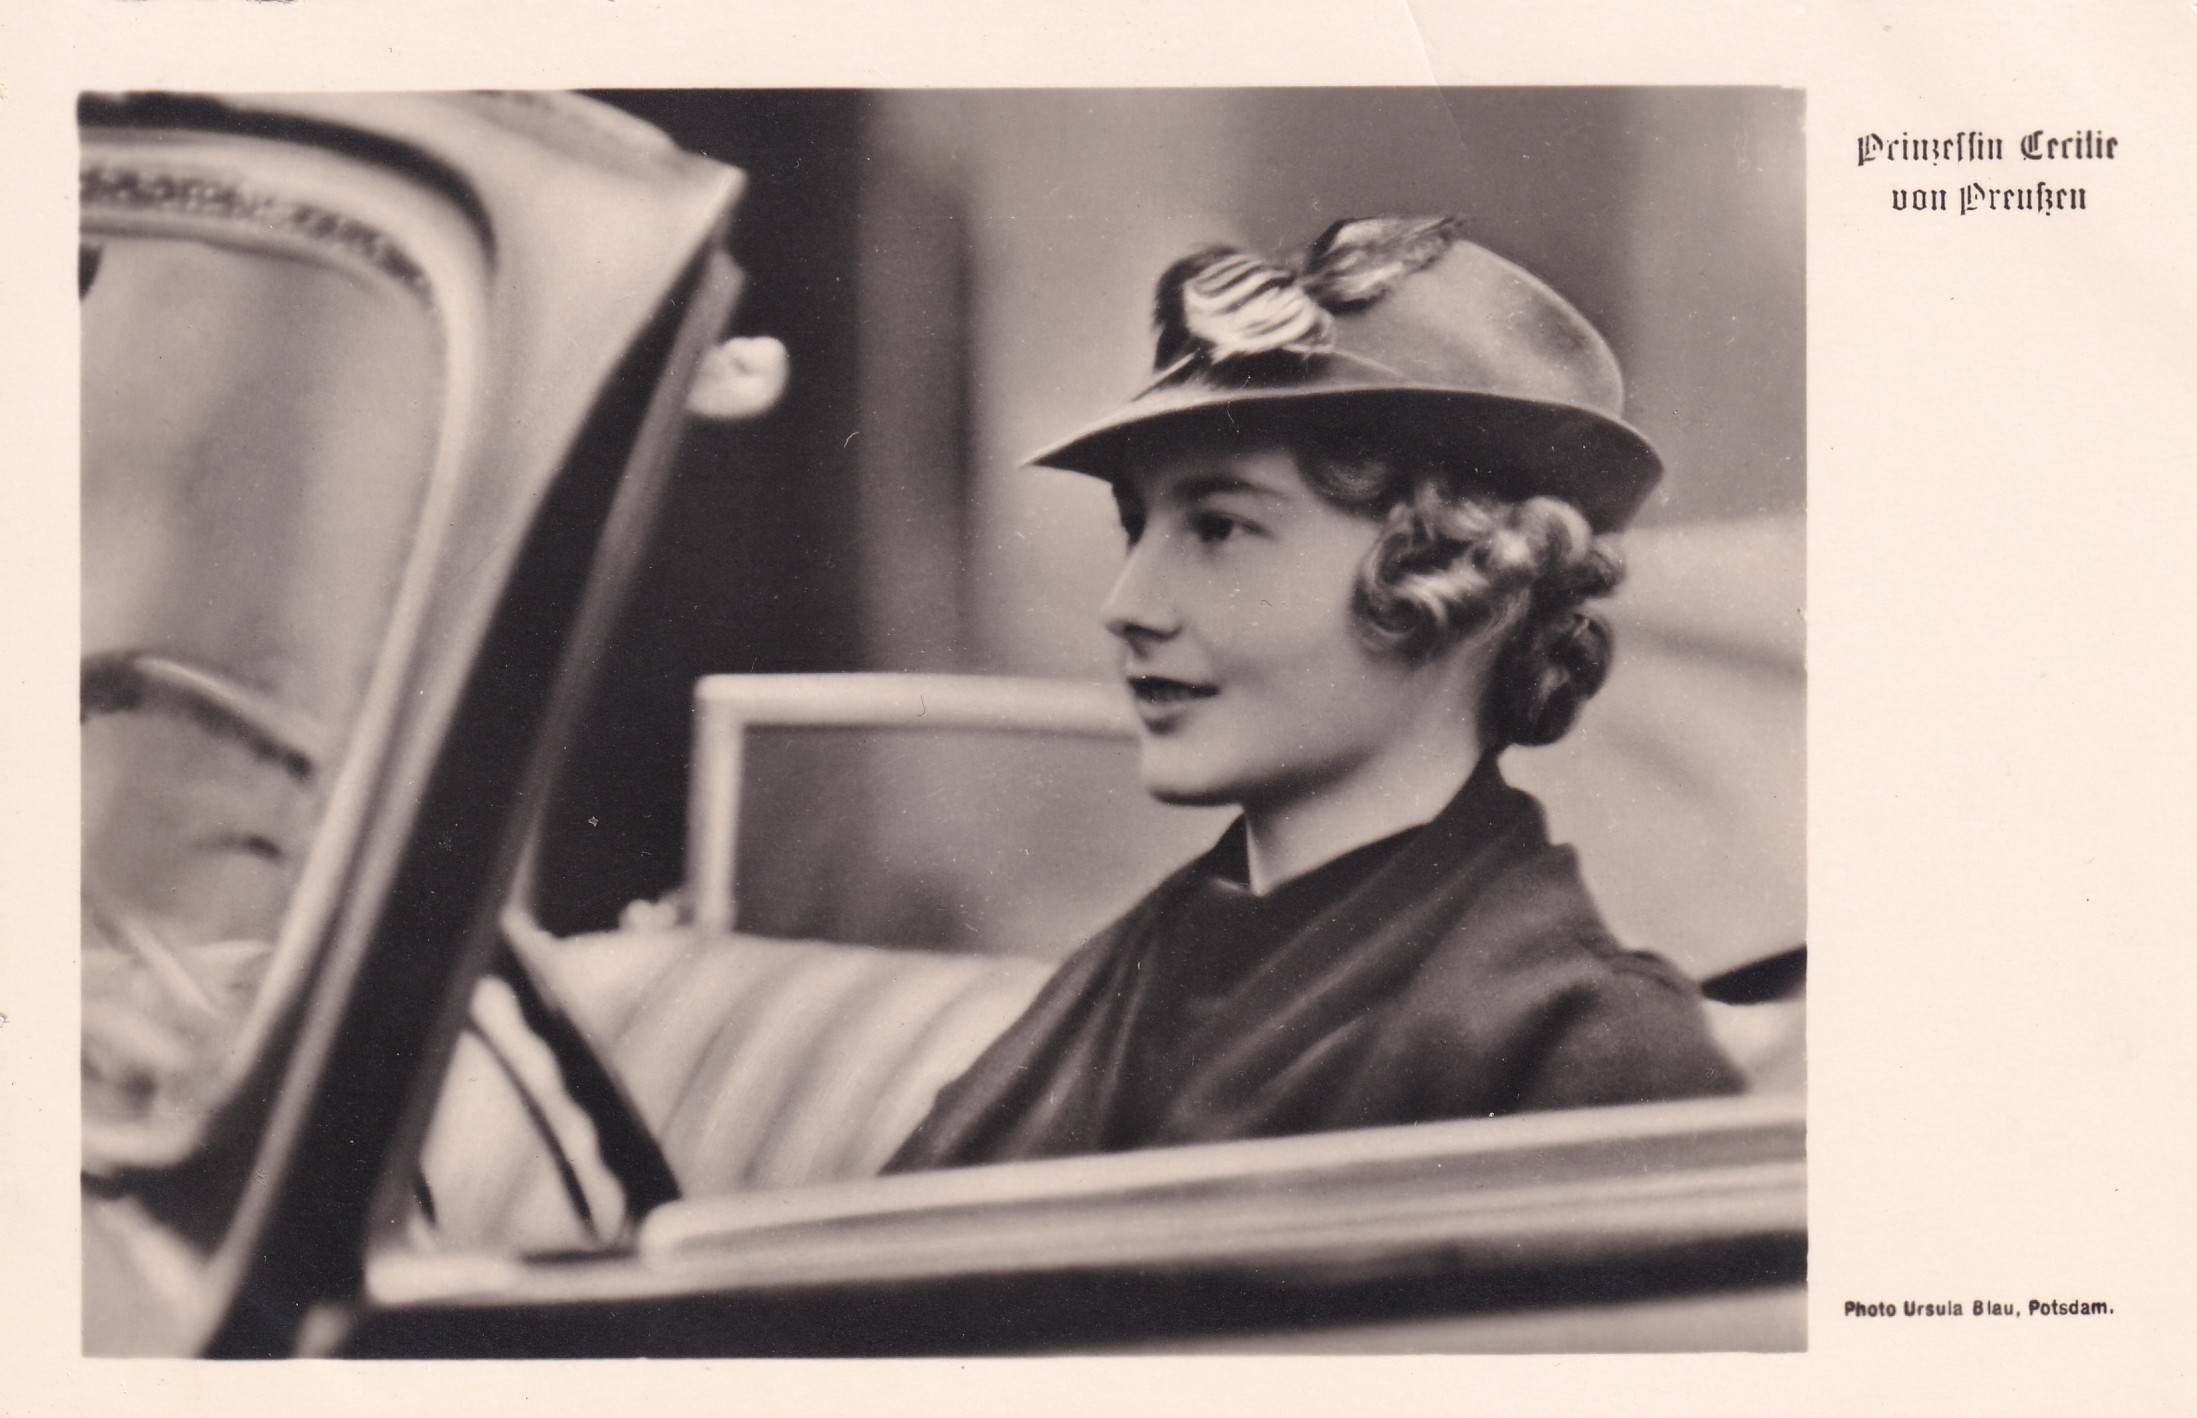 Bildpostkarte mit Foto der Prinzessin Cecilie von Preußen (1917-1975) im Auto, 1936 (Schloß Wernigerode GmbH RR-F)